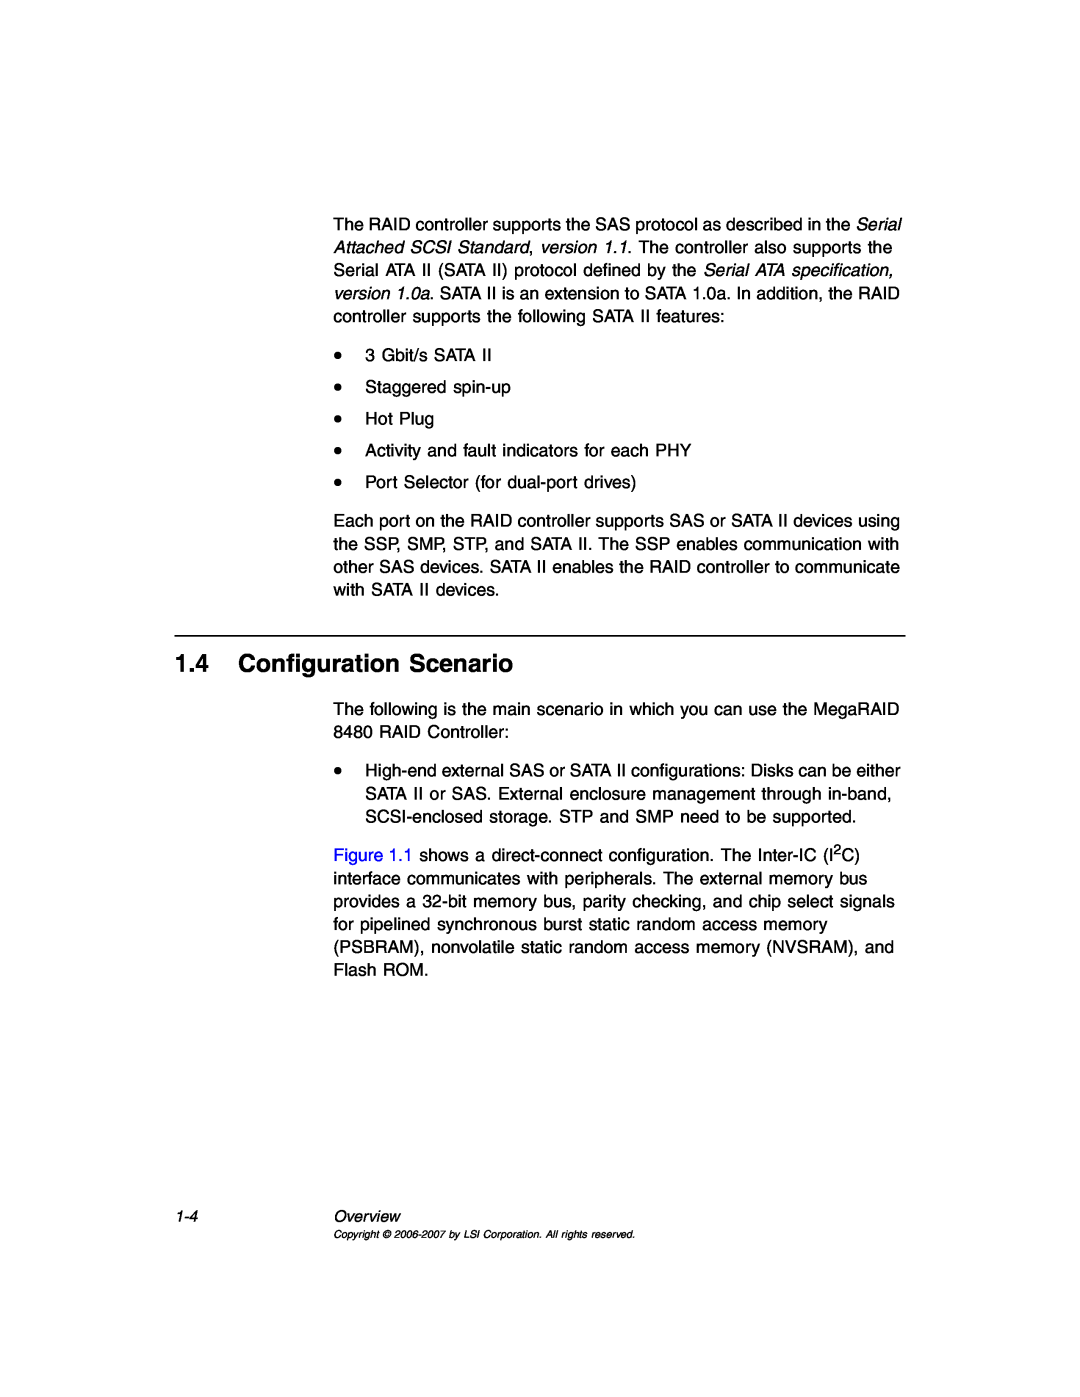 IBM MegaRAID 8480 manual Configuration Scenario 